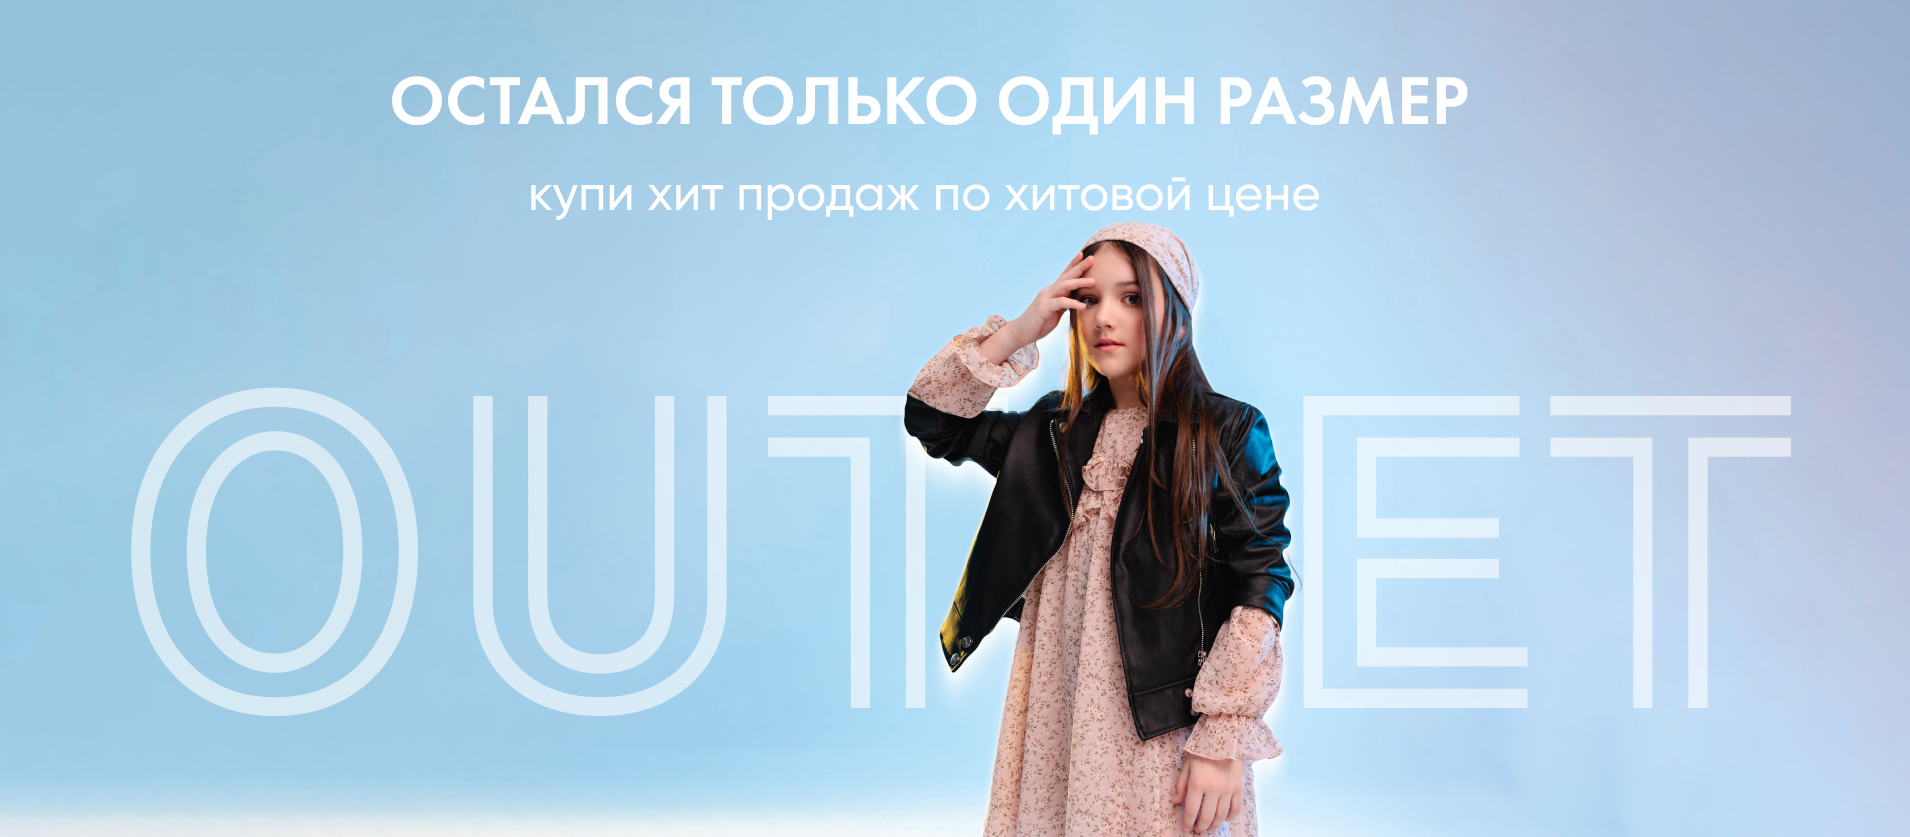 Женская одежда от производителя в розницу по оптовым ценам Одесса 7км